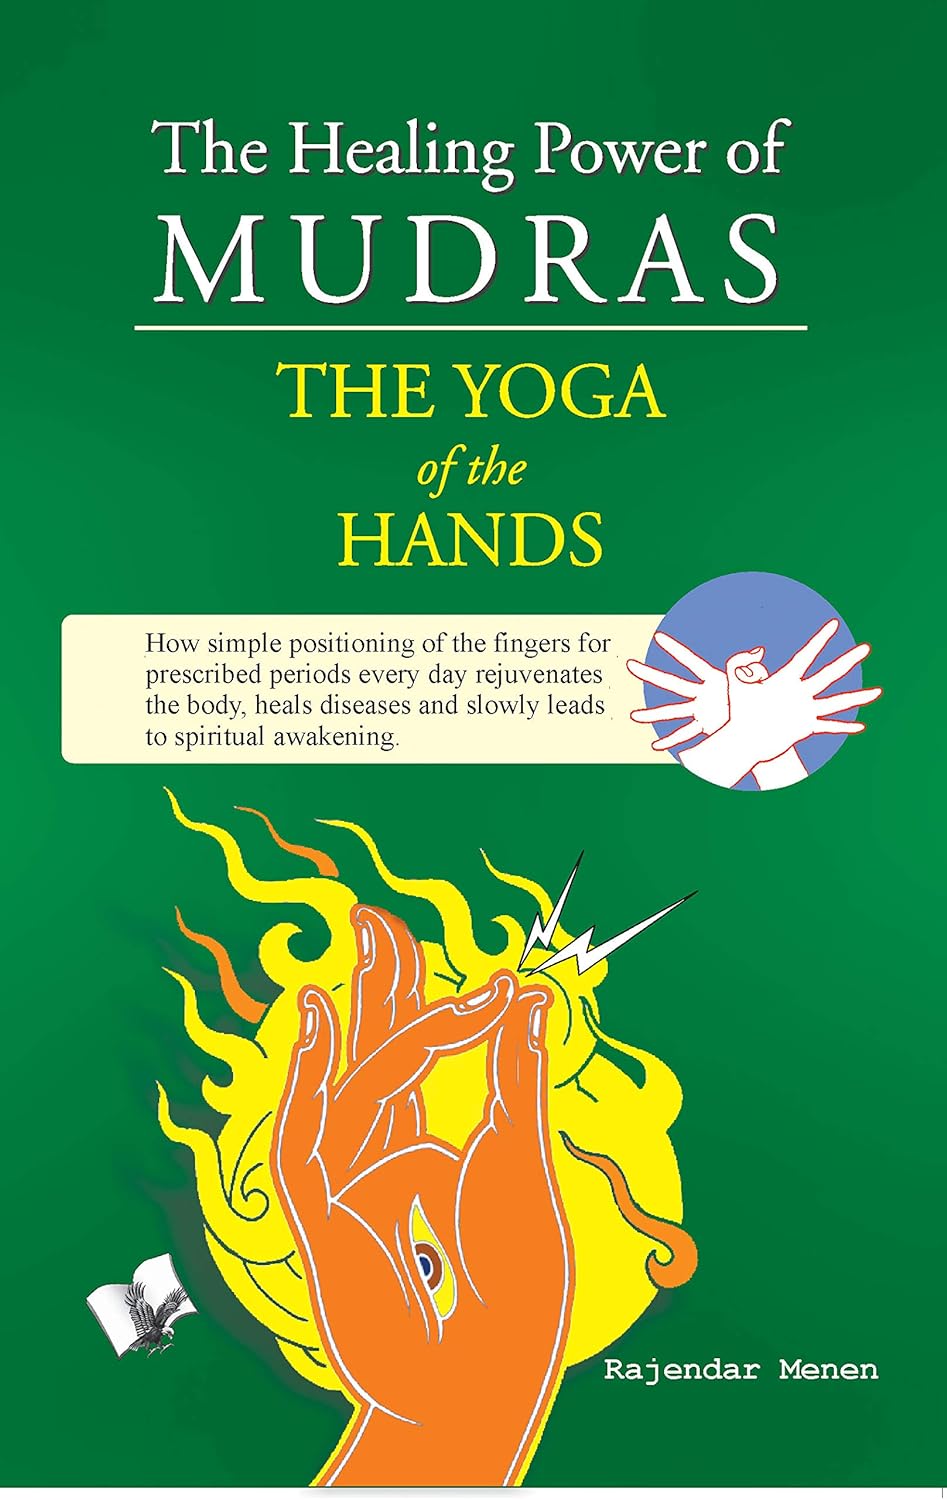 The Healing Power of Mudras-The Yoga of the Hands-Rajendar Menen-Kindle-Stumbit Mudras